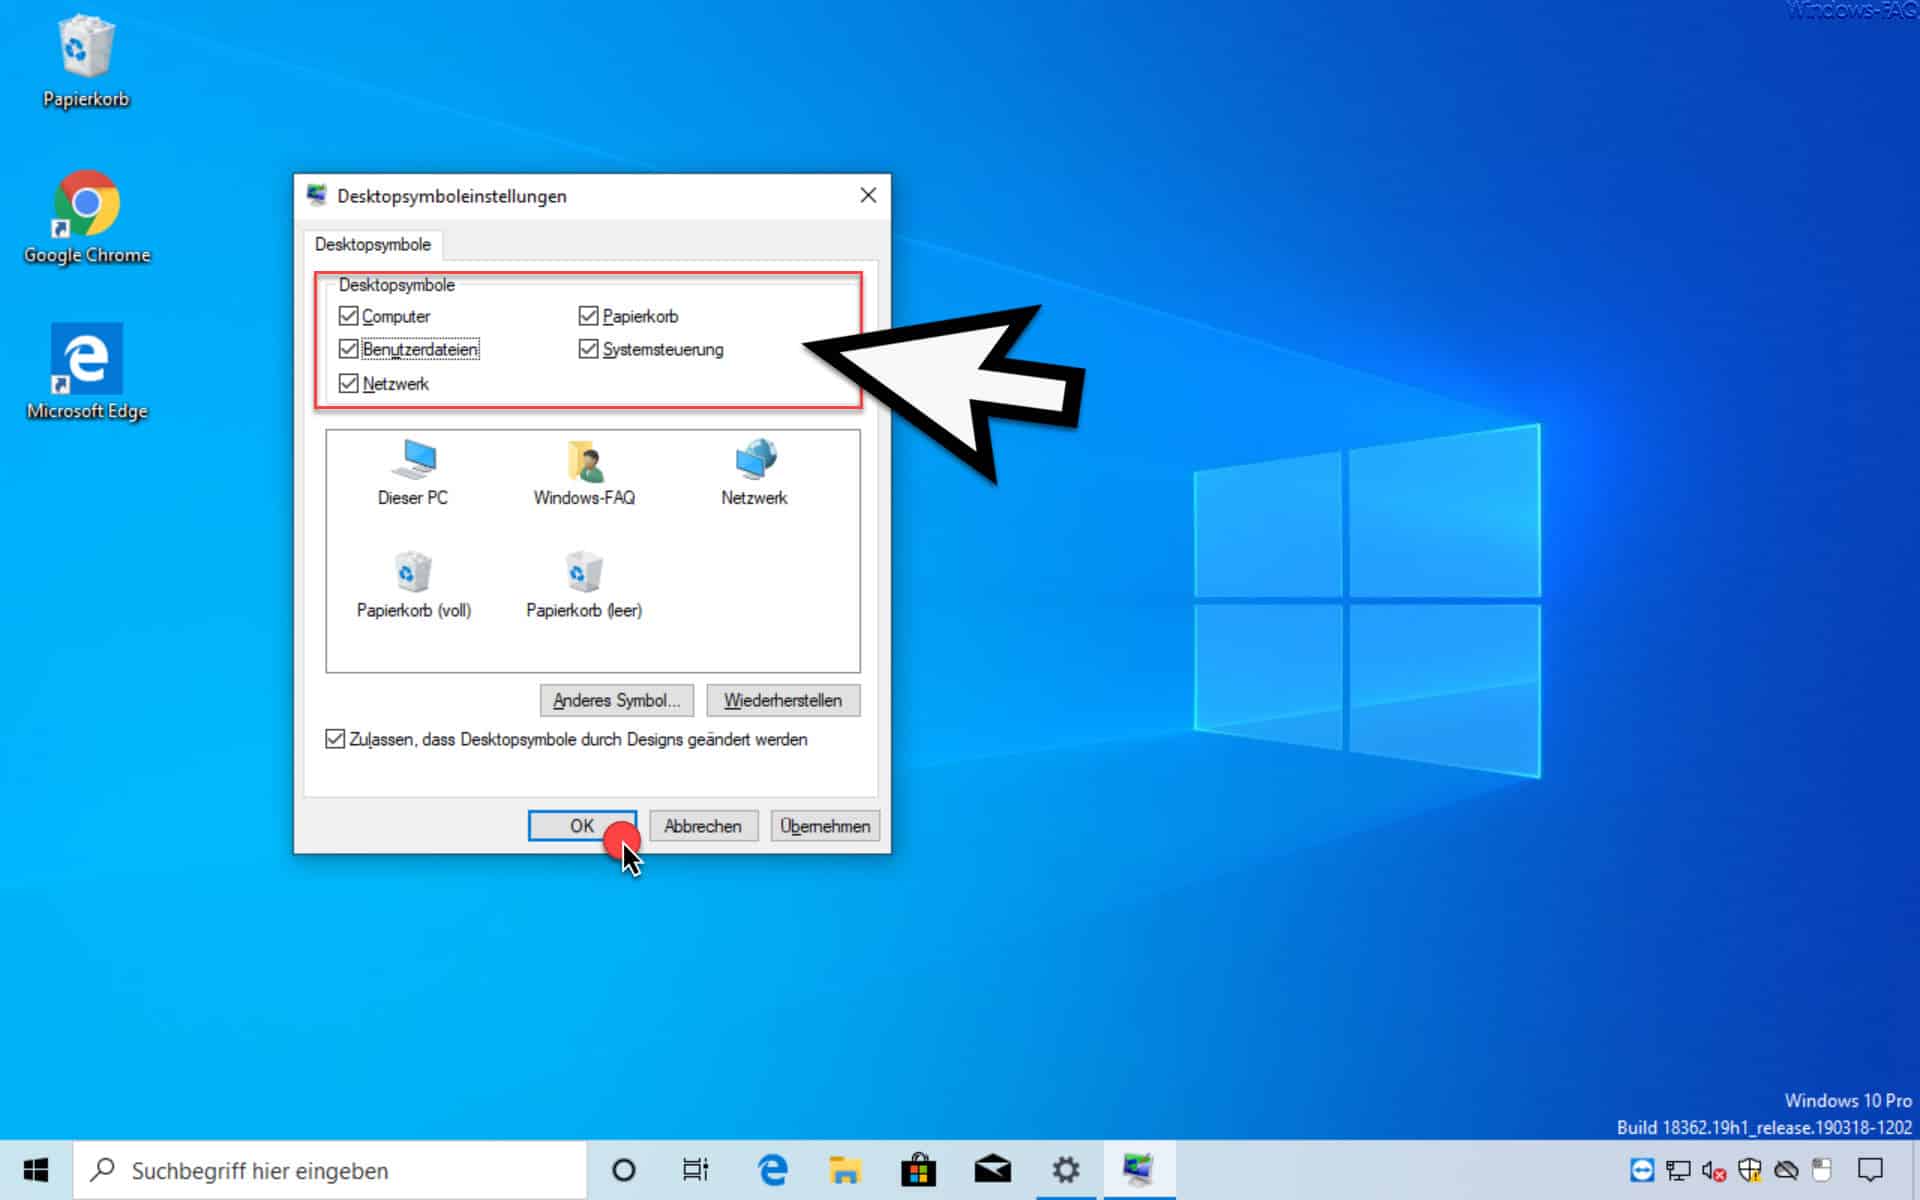 Desktopsymbole Computer, Benutzerdaten, Netzwerk, Papierkorb, Systemsteuerung auf Windows 10 Desktop anzeigen